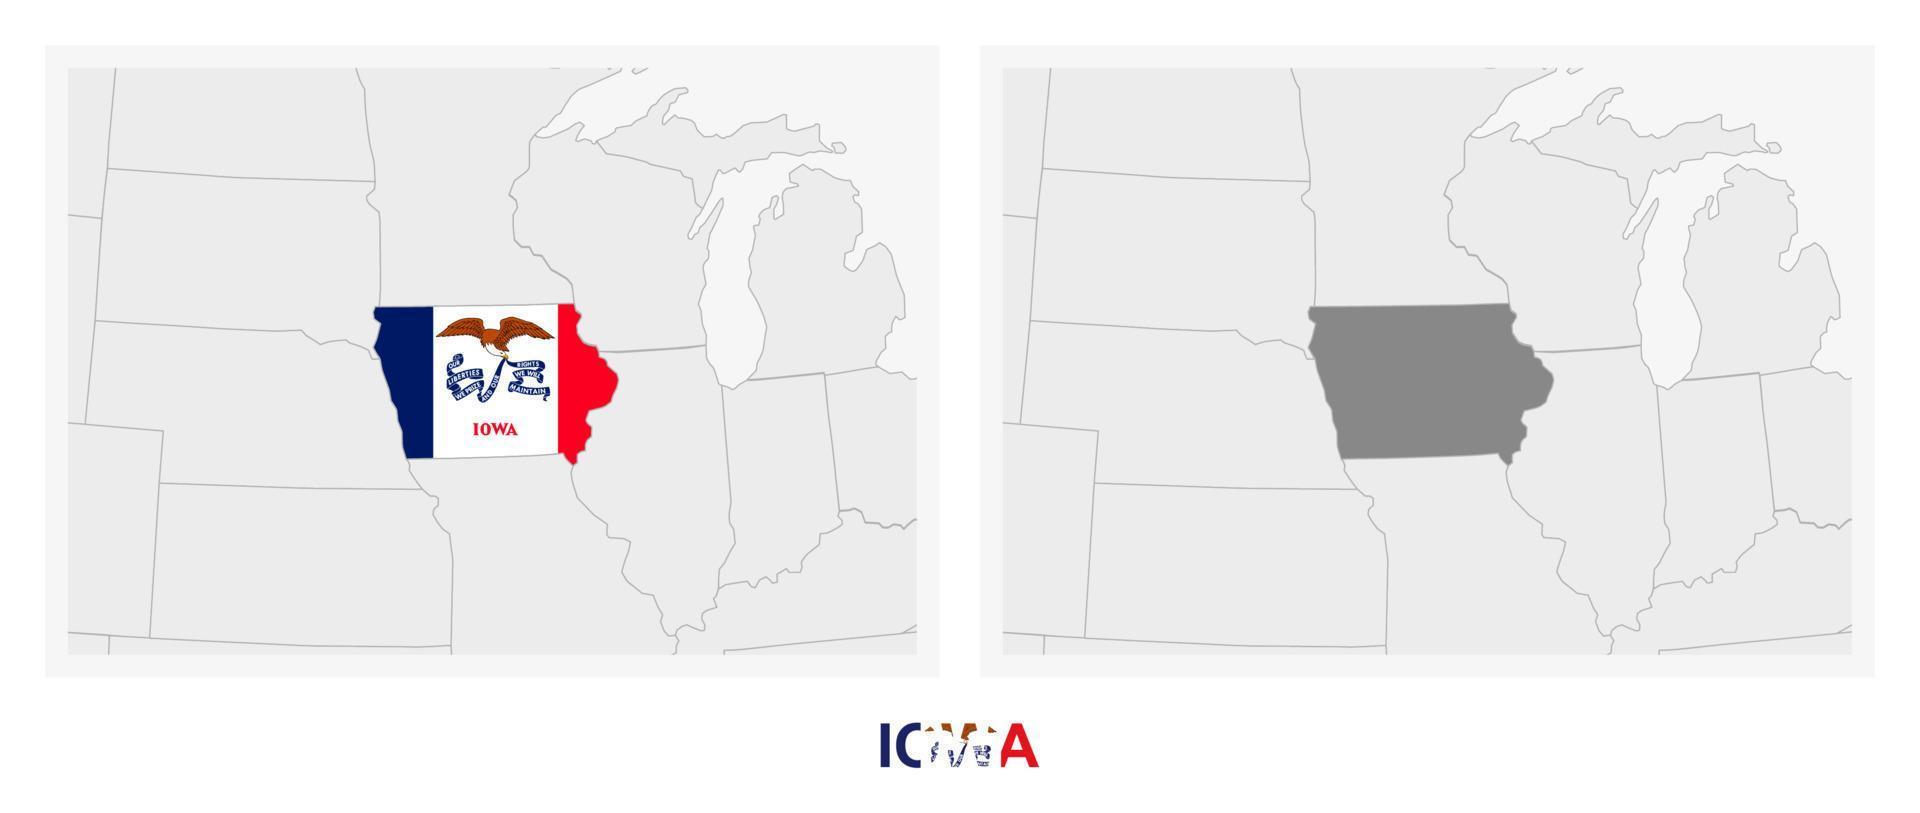 deux versions de la carte de l'état américain de l'iowa, avec le drapeau de l'iowa et surlignées en gris foncé. vecteur